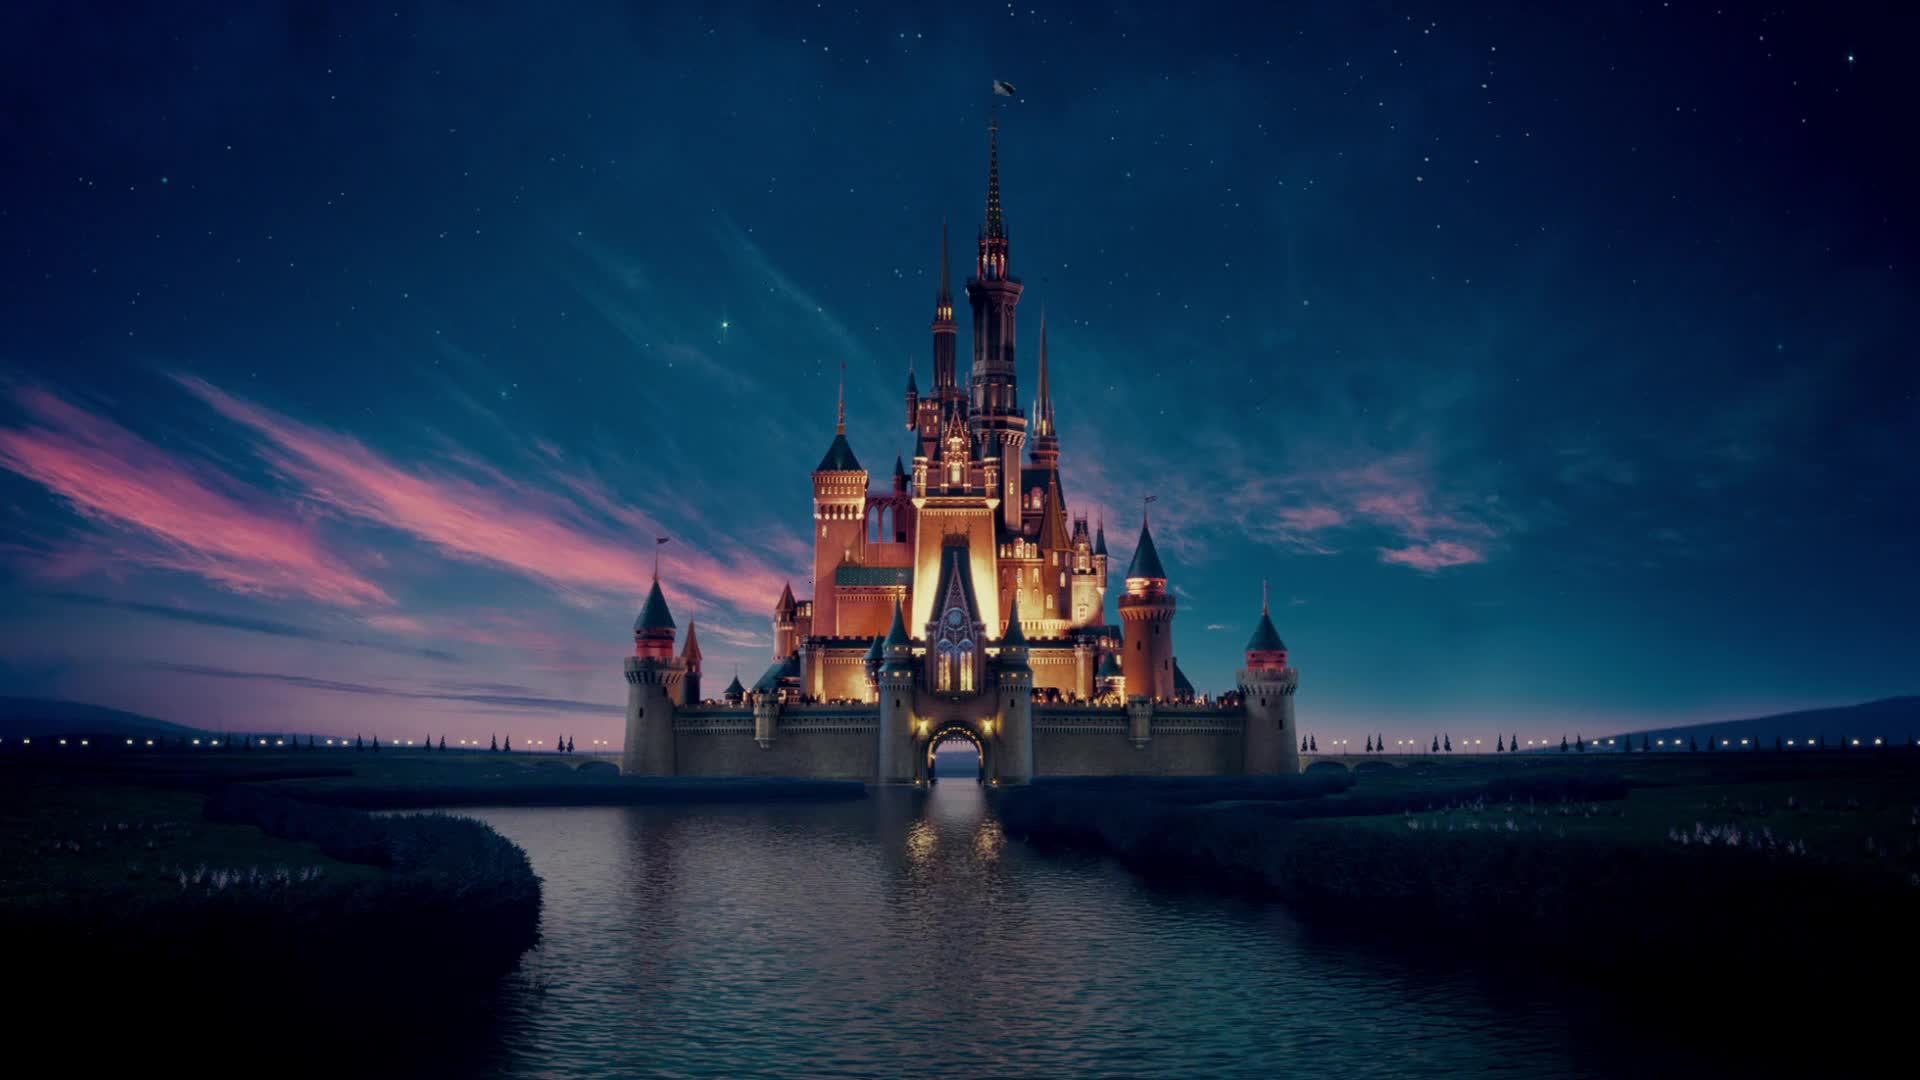 迪士尼城堡壁纸梦幻图片